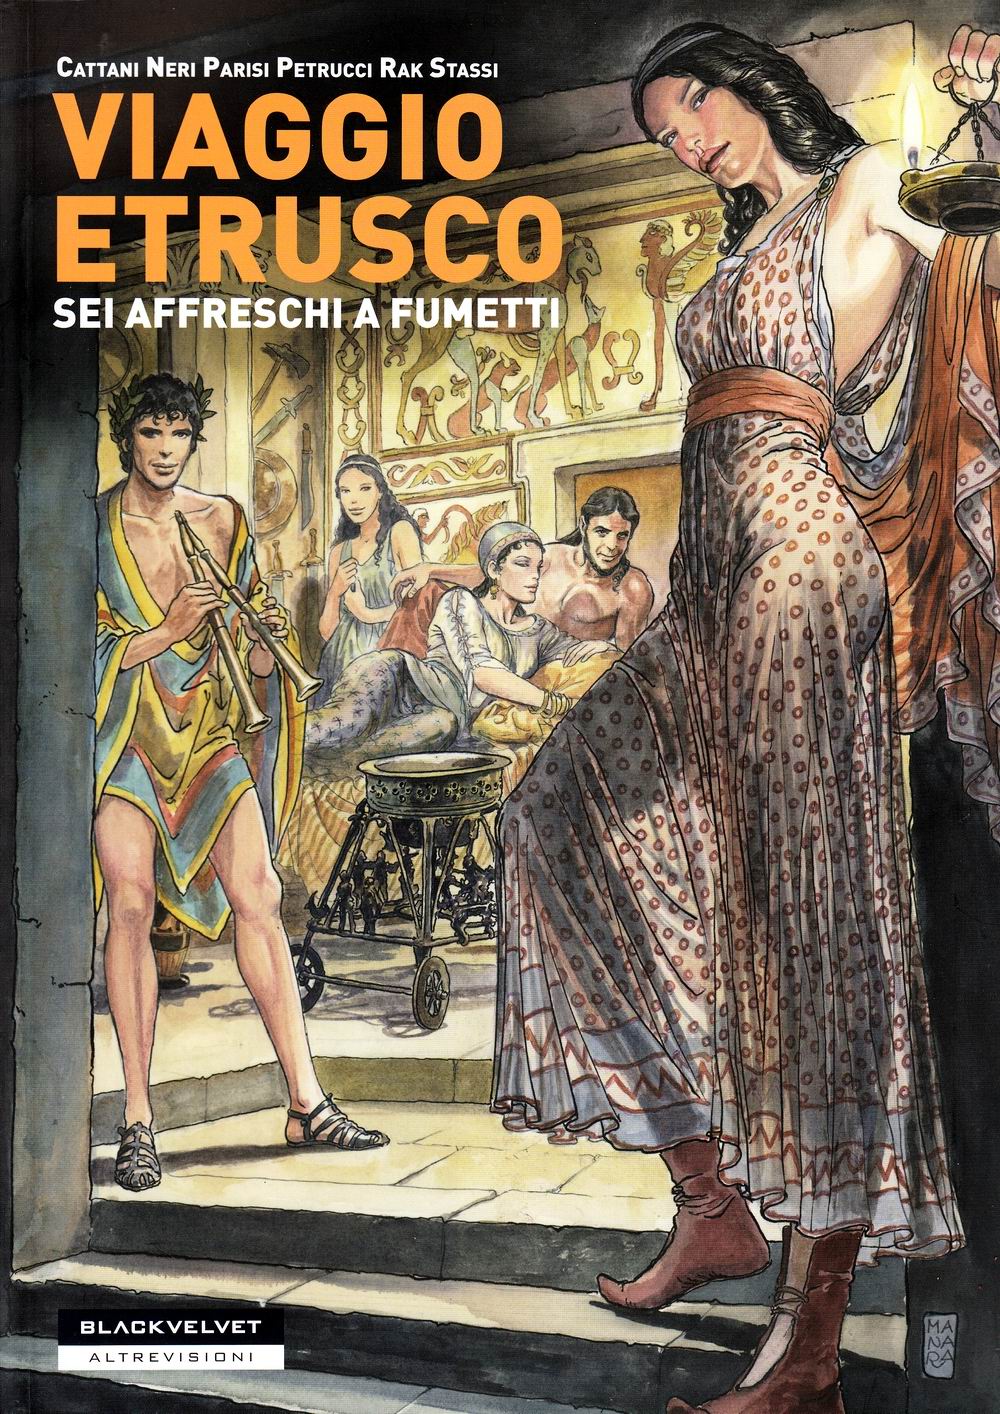 Gli Etruschi nei fumetti.  Storie, invenzioni e gioco